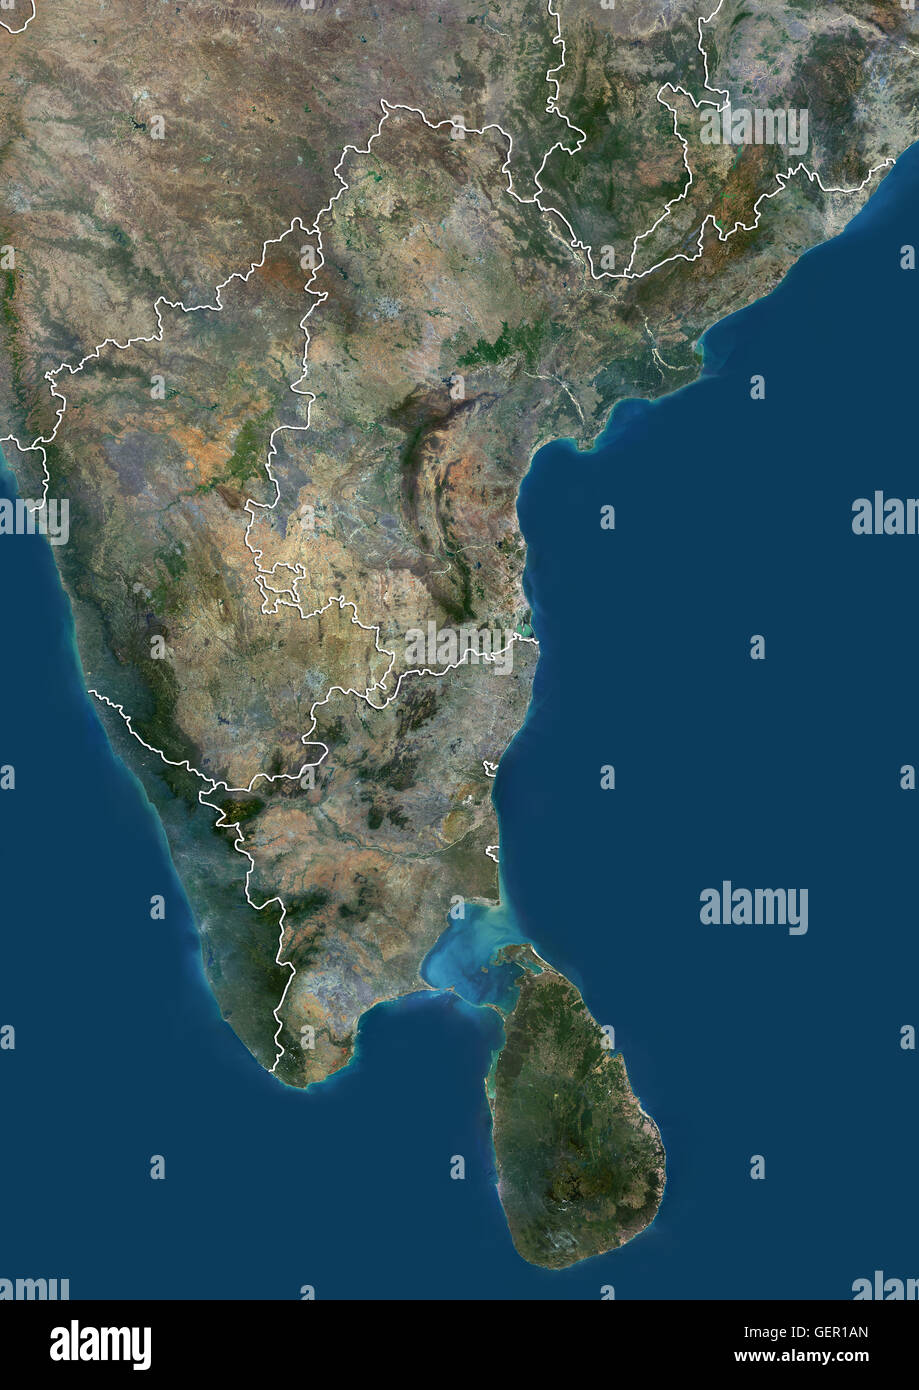 Vue Satellite de l'Inde du Sud et Sri Lanka (avec des limites administratives). Il couvre les états indiens de l'Andhra Pradesh, Karnataka, Kerala, Tamil Nadu et Telangana ainsi que d'Azur. Cette image a été compilé à partir de données acquises par Landsat 8 satell Banque D'Images